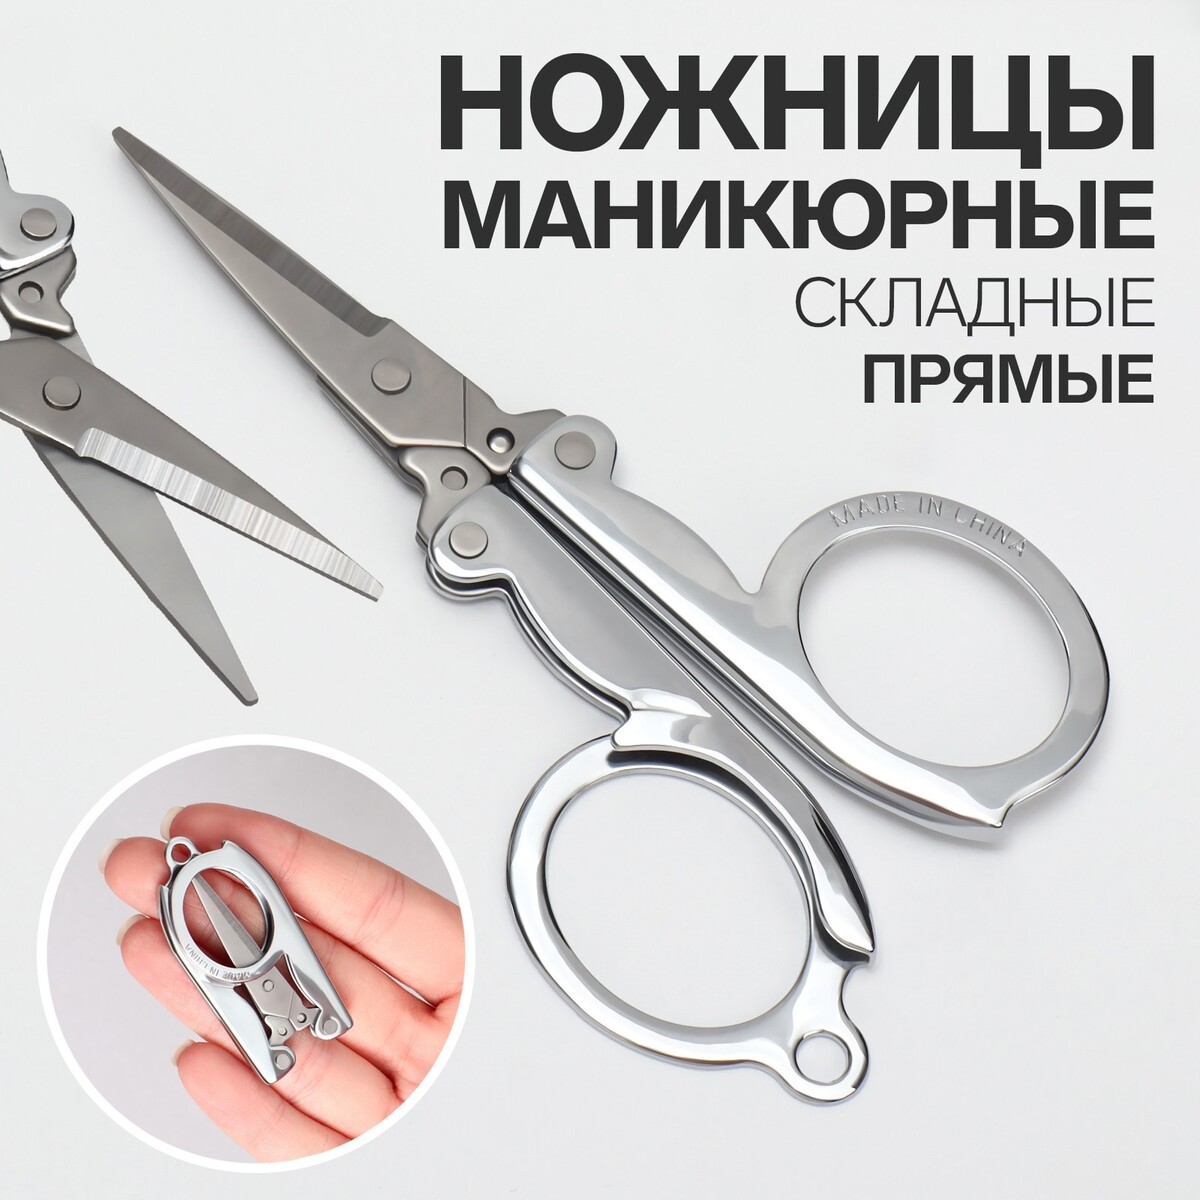 Ножницы маникюрные, прямые, складные, 9 см, цвет серебристый ножницы маникюрные прямые складные 9 см серебристый